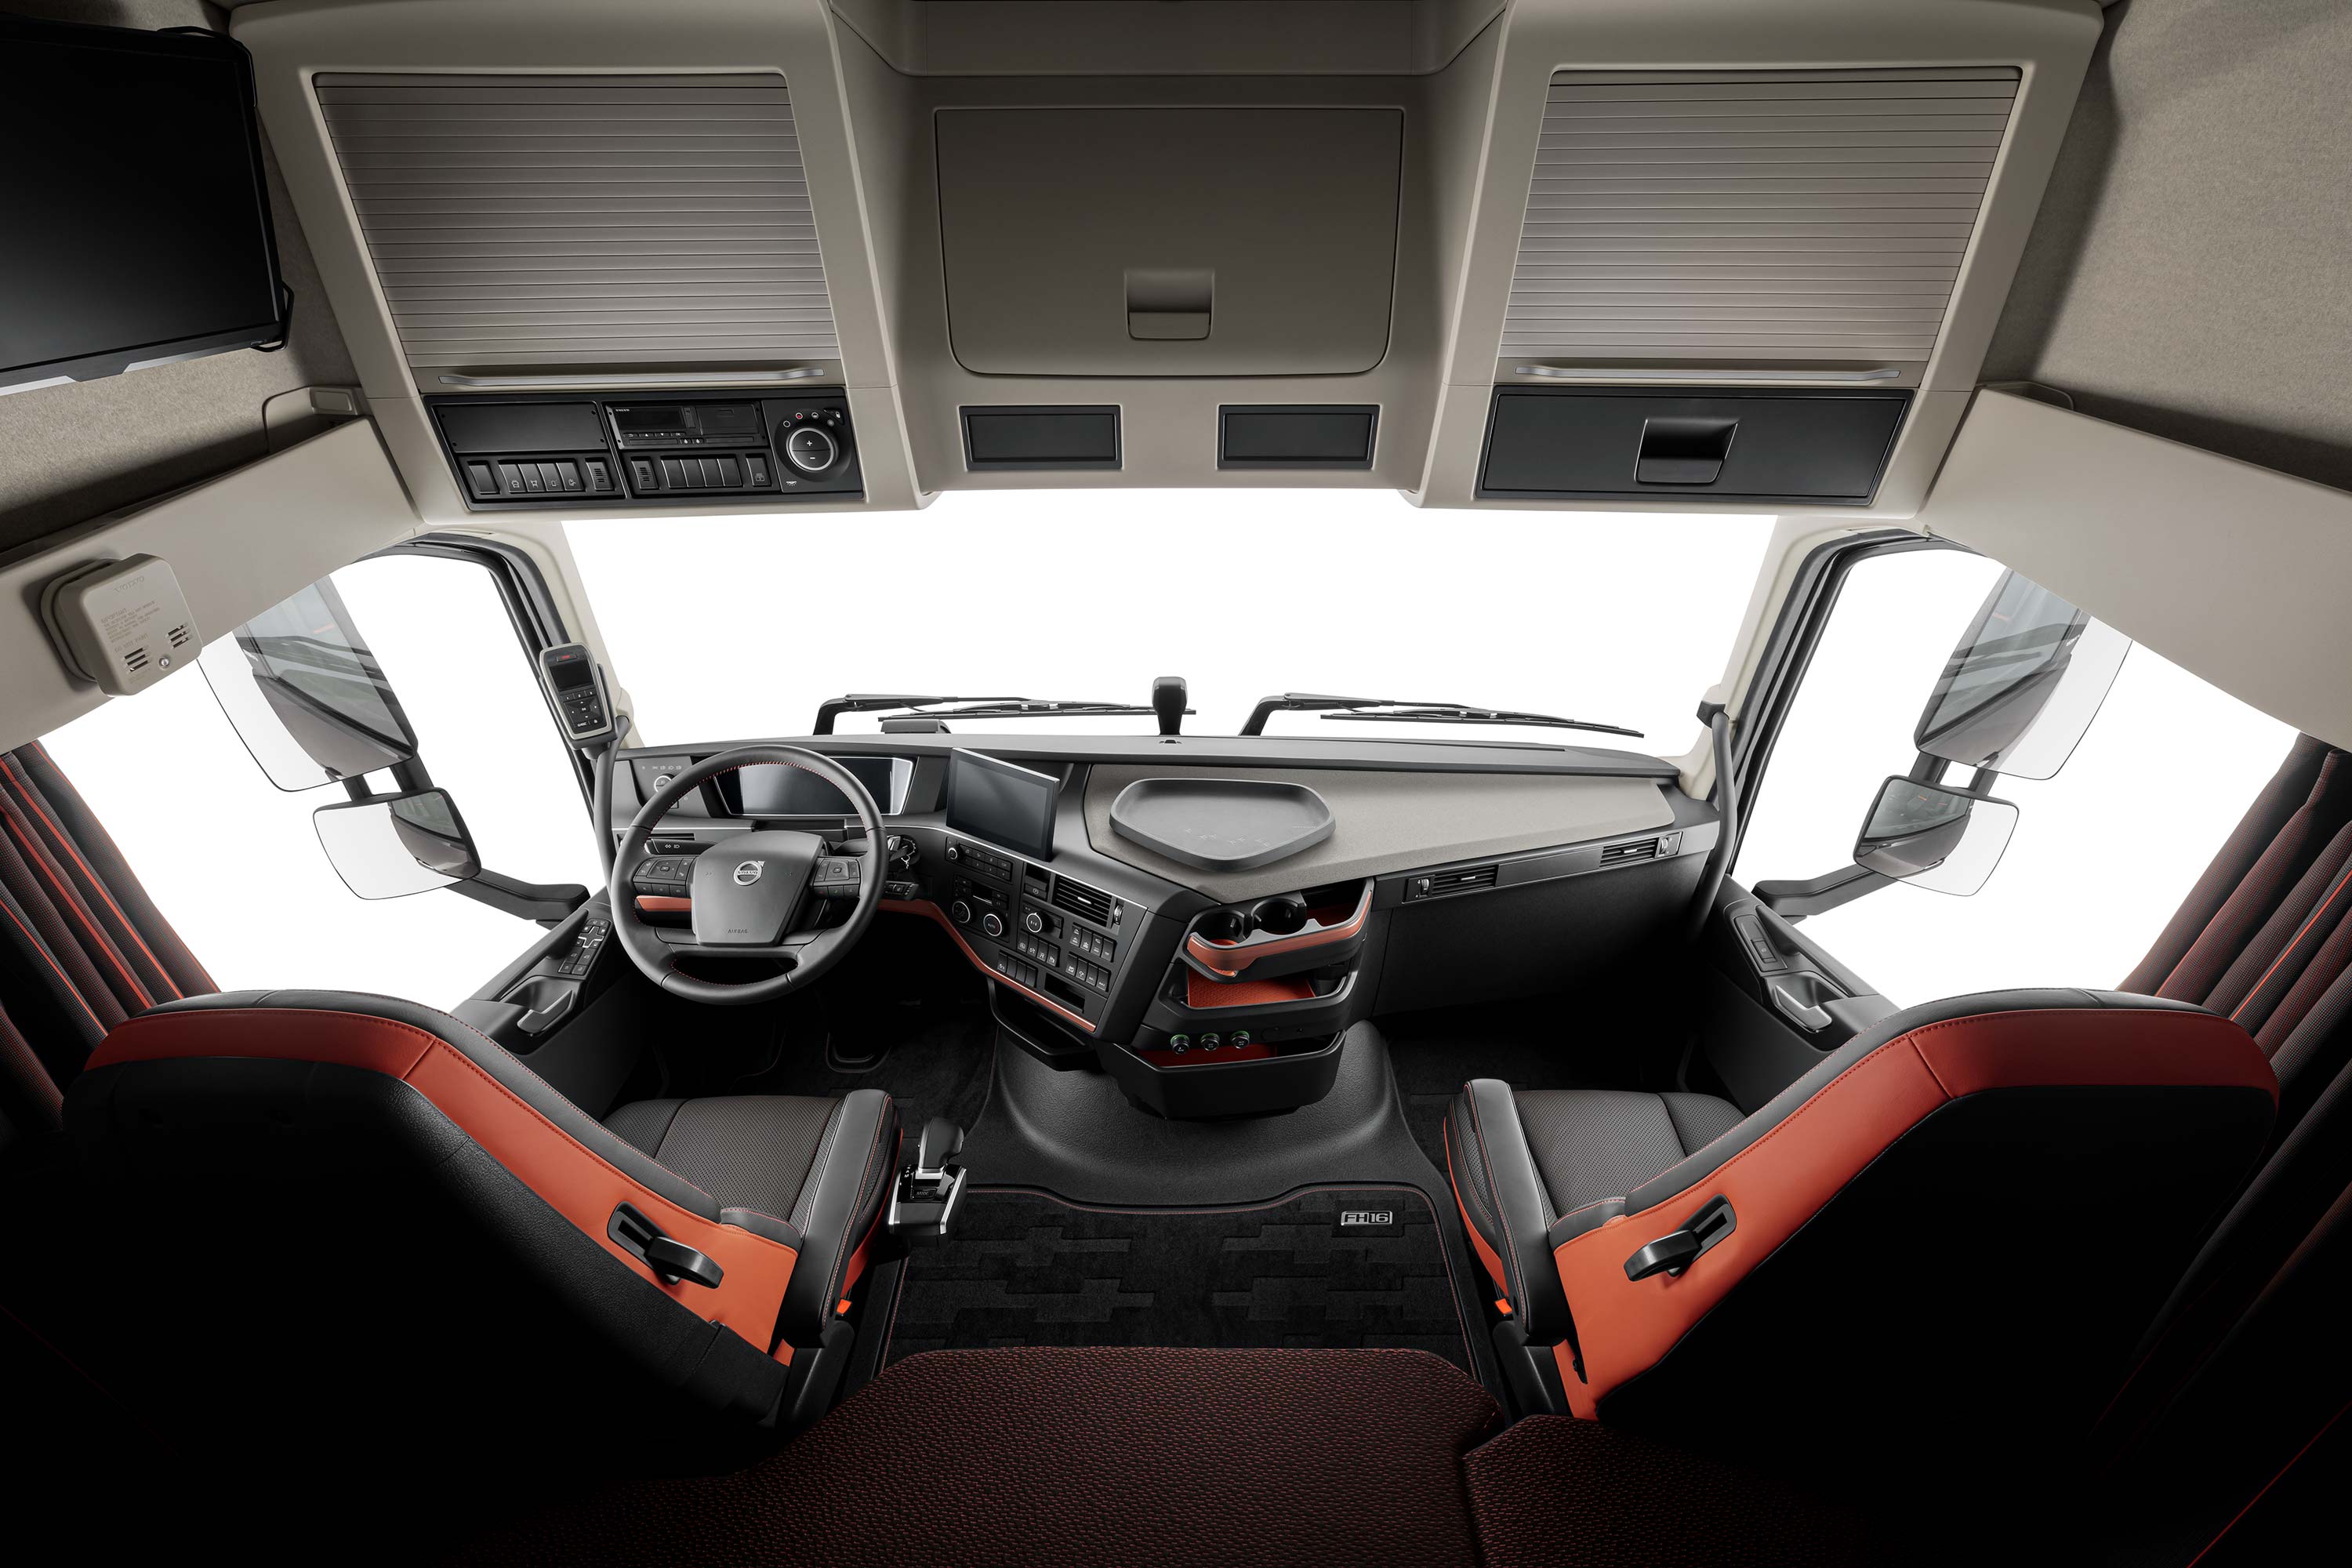 A Volvo FH16 egyedi megjelenést és rengeteg helyet kínál.